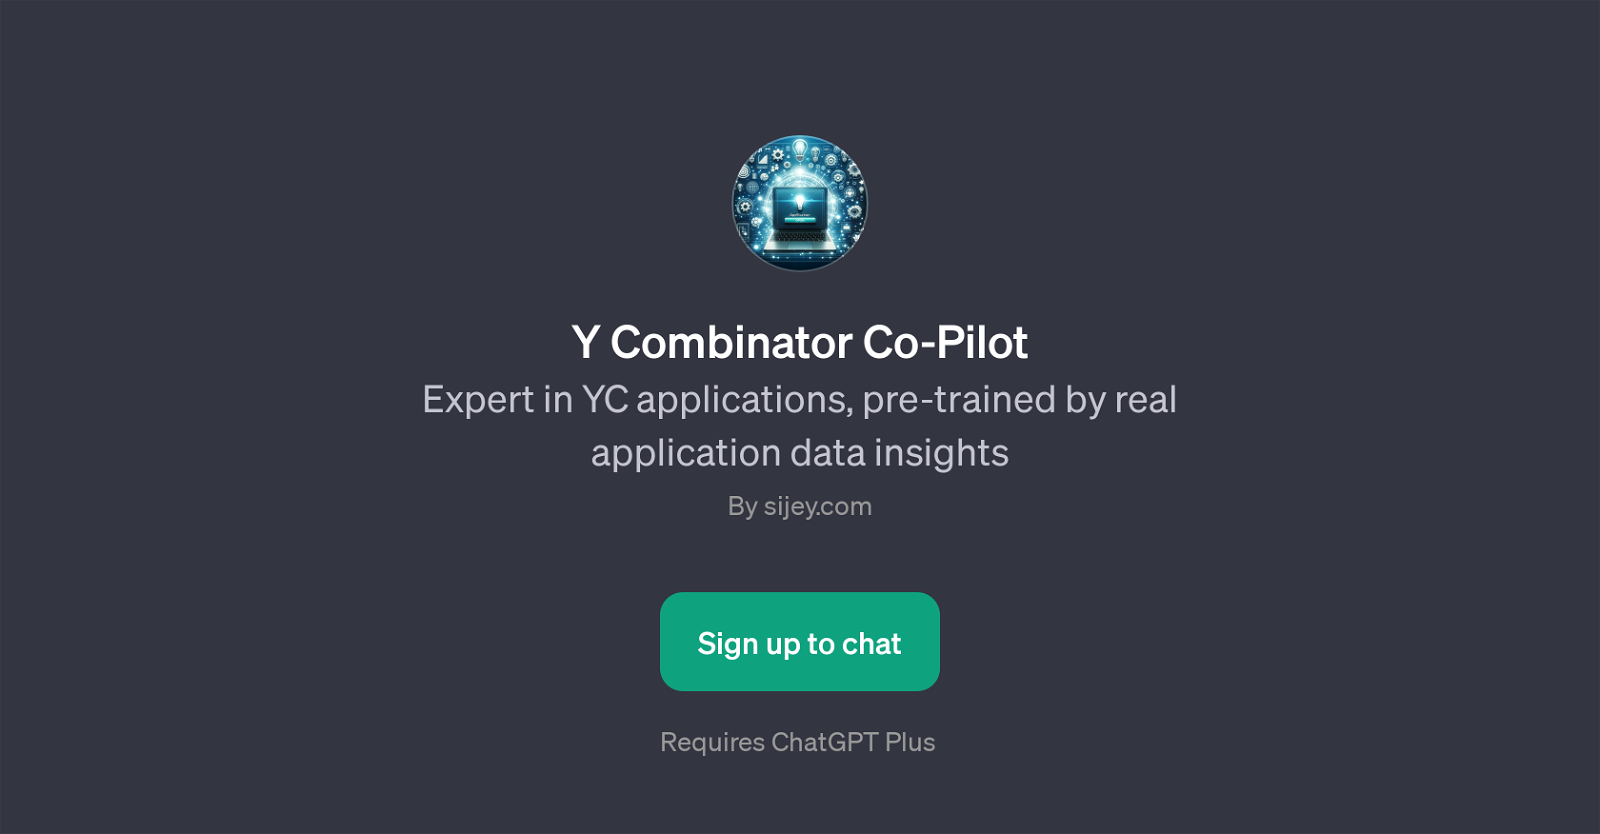 Y Combinator Co-Pilot website